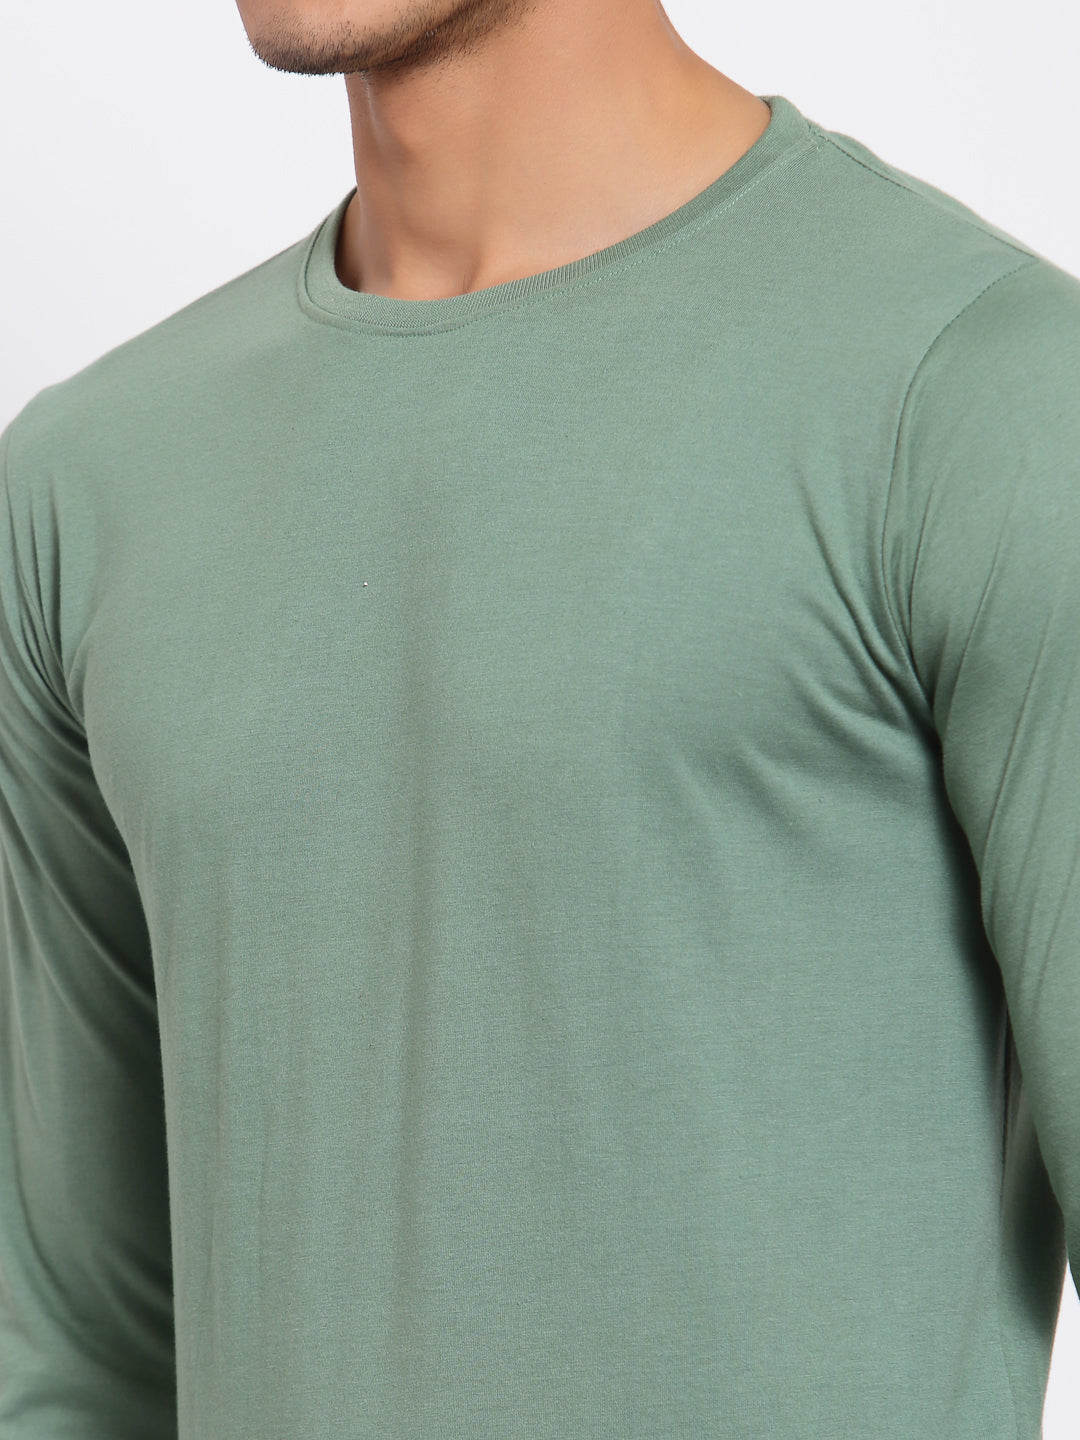 Plain Light Green Full Sleeves T-Shirt